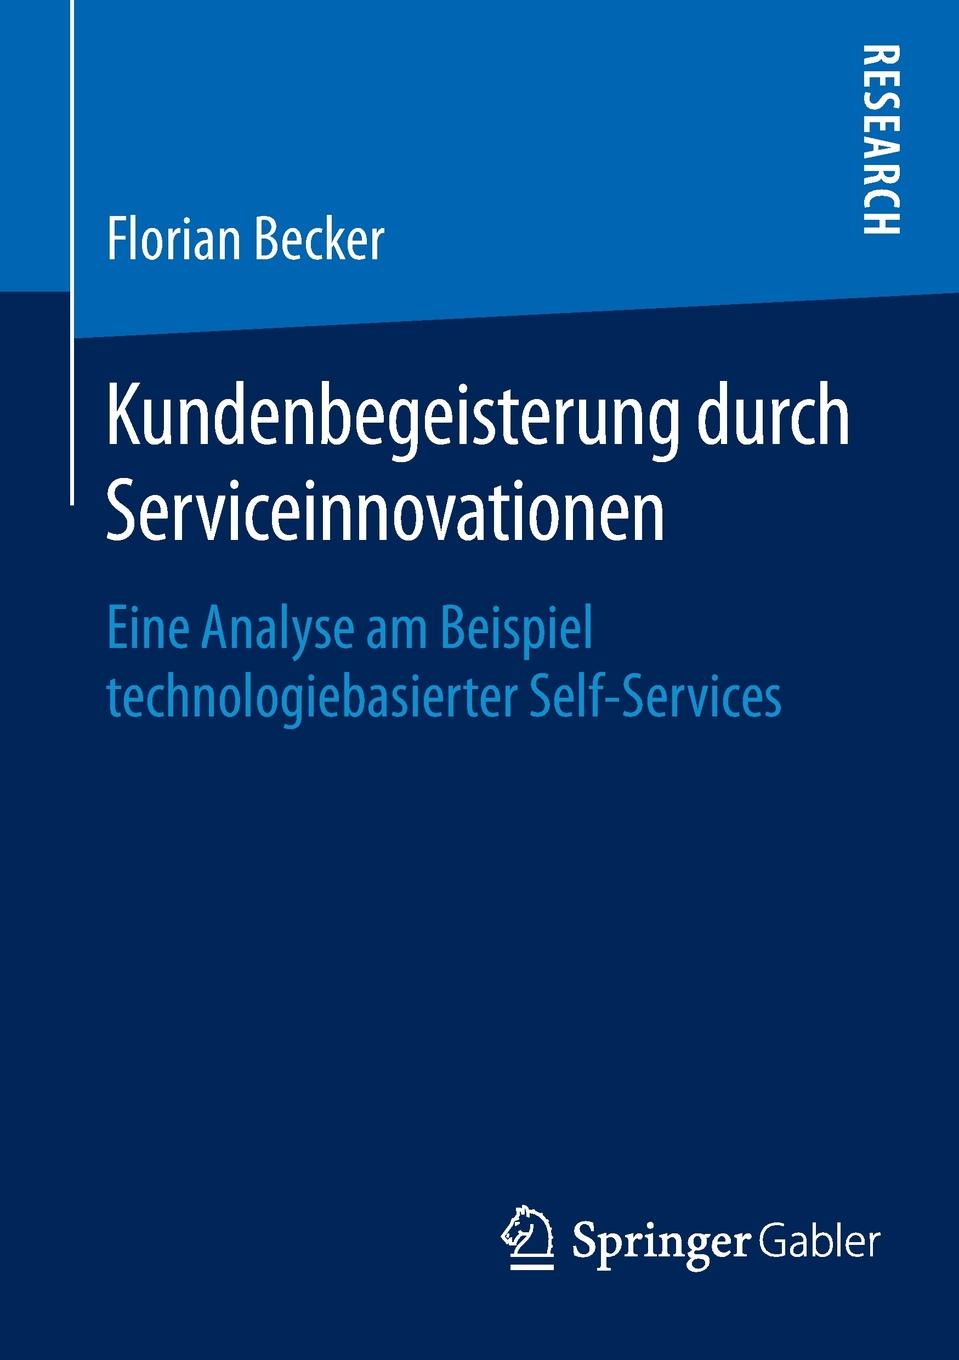 Kundenbegeisterung durch Serviceinnovationen. Eine Analyse am Beispiel technologiebasierter Self-Services